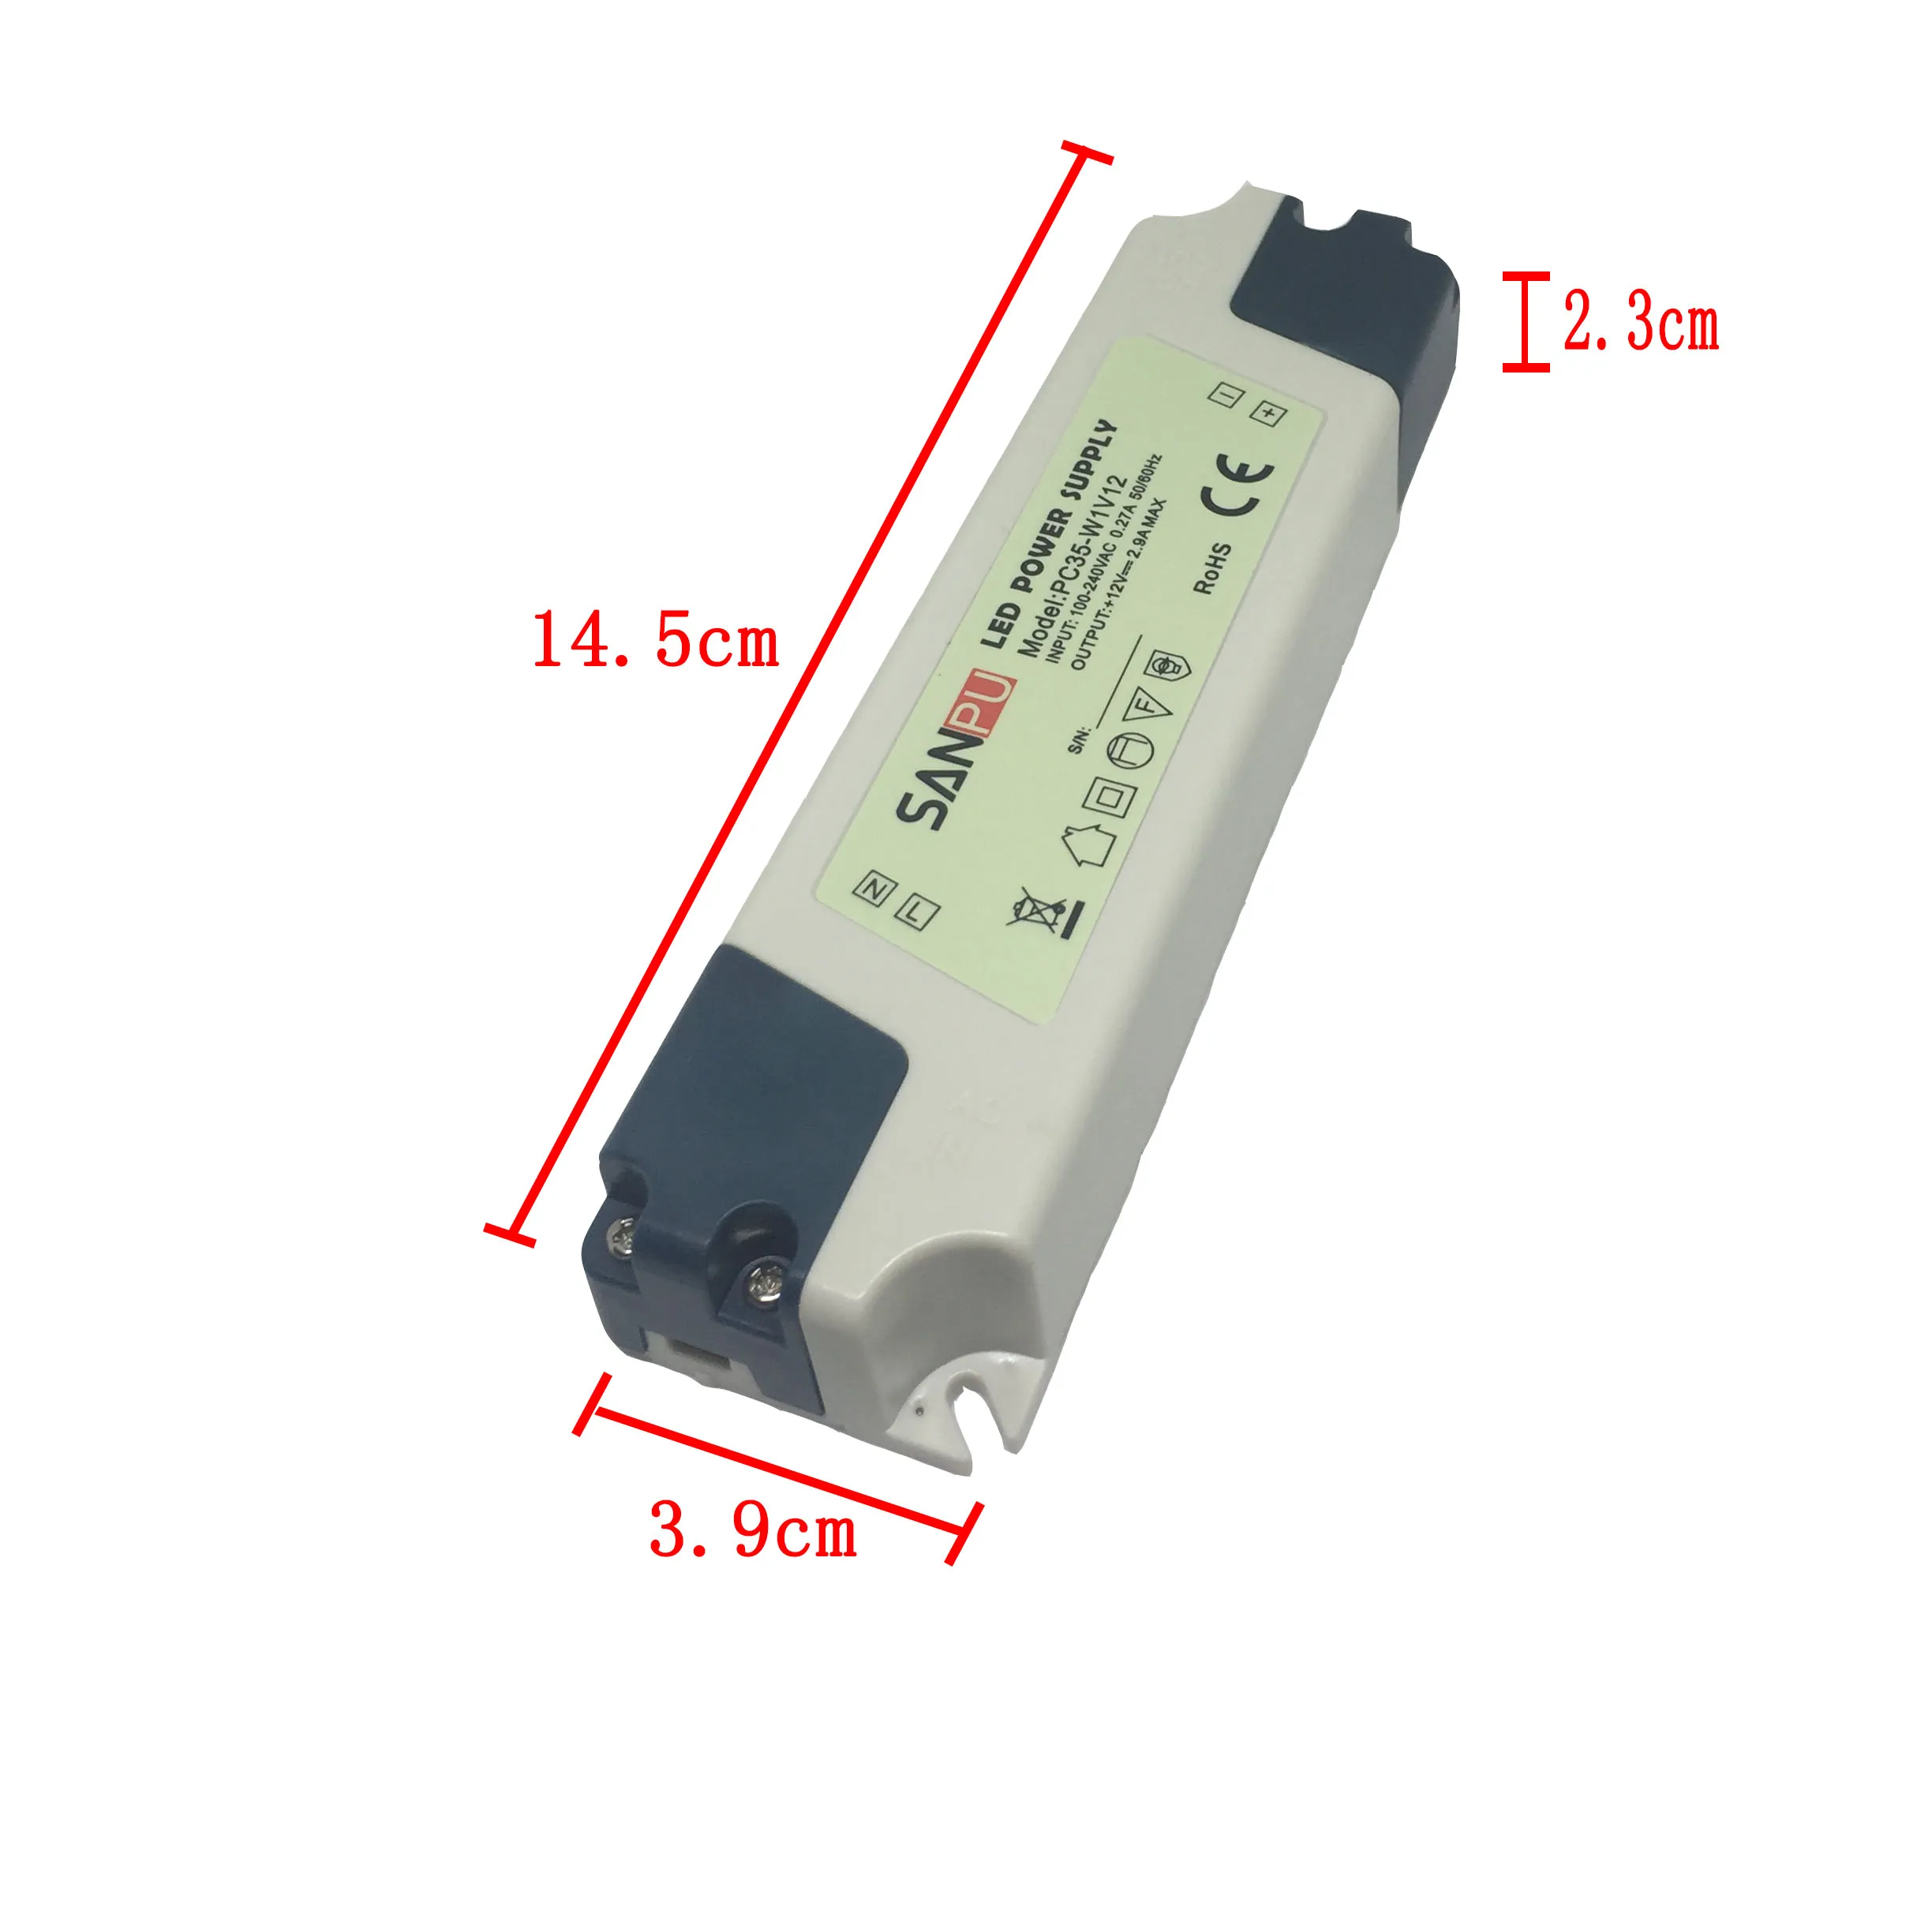 SANPU LED alimentation 12V 35W tension constante sortie unique utilisation intérieure IP44 coque en plastique petite taille PC35-W1V12